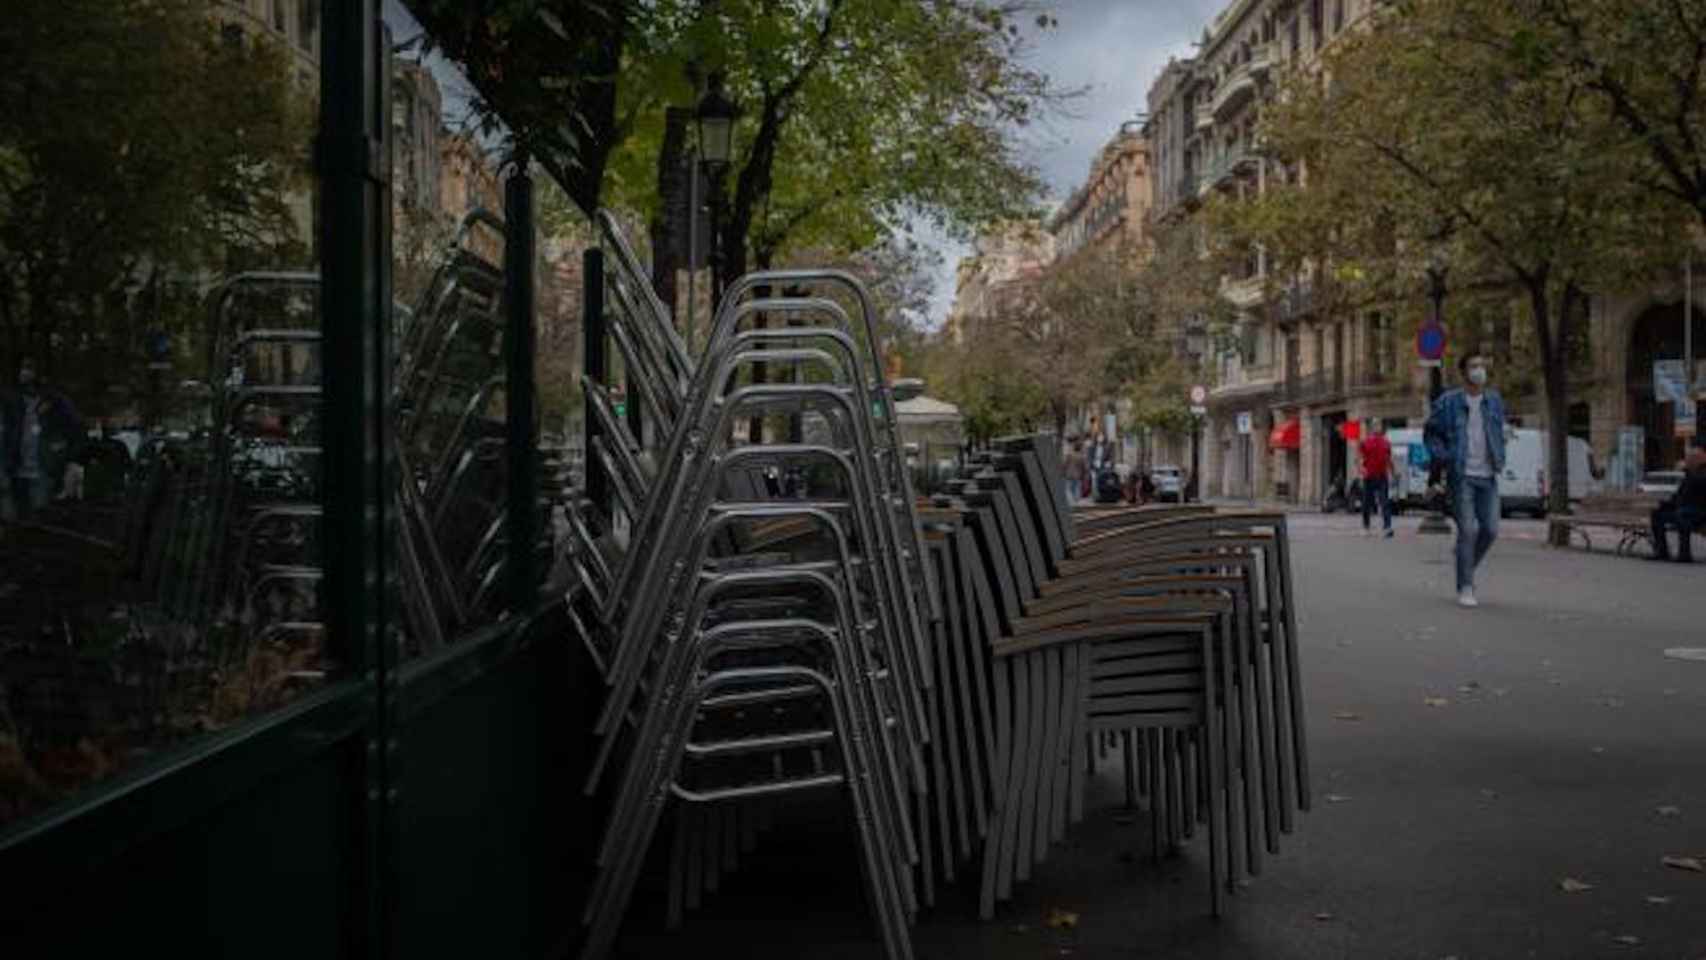 Una terraza cerrada en Barcelona, que en 2021 solo pagará un 25% de tasa, según la propuesta de ordenanzas fiscales / EUROPA PRESS - DAVID ZORRAKINO